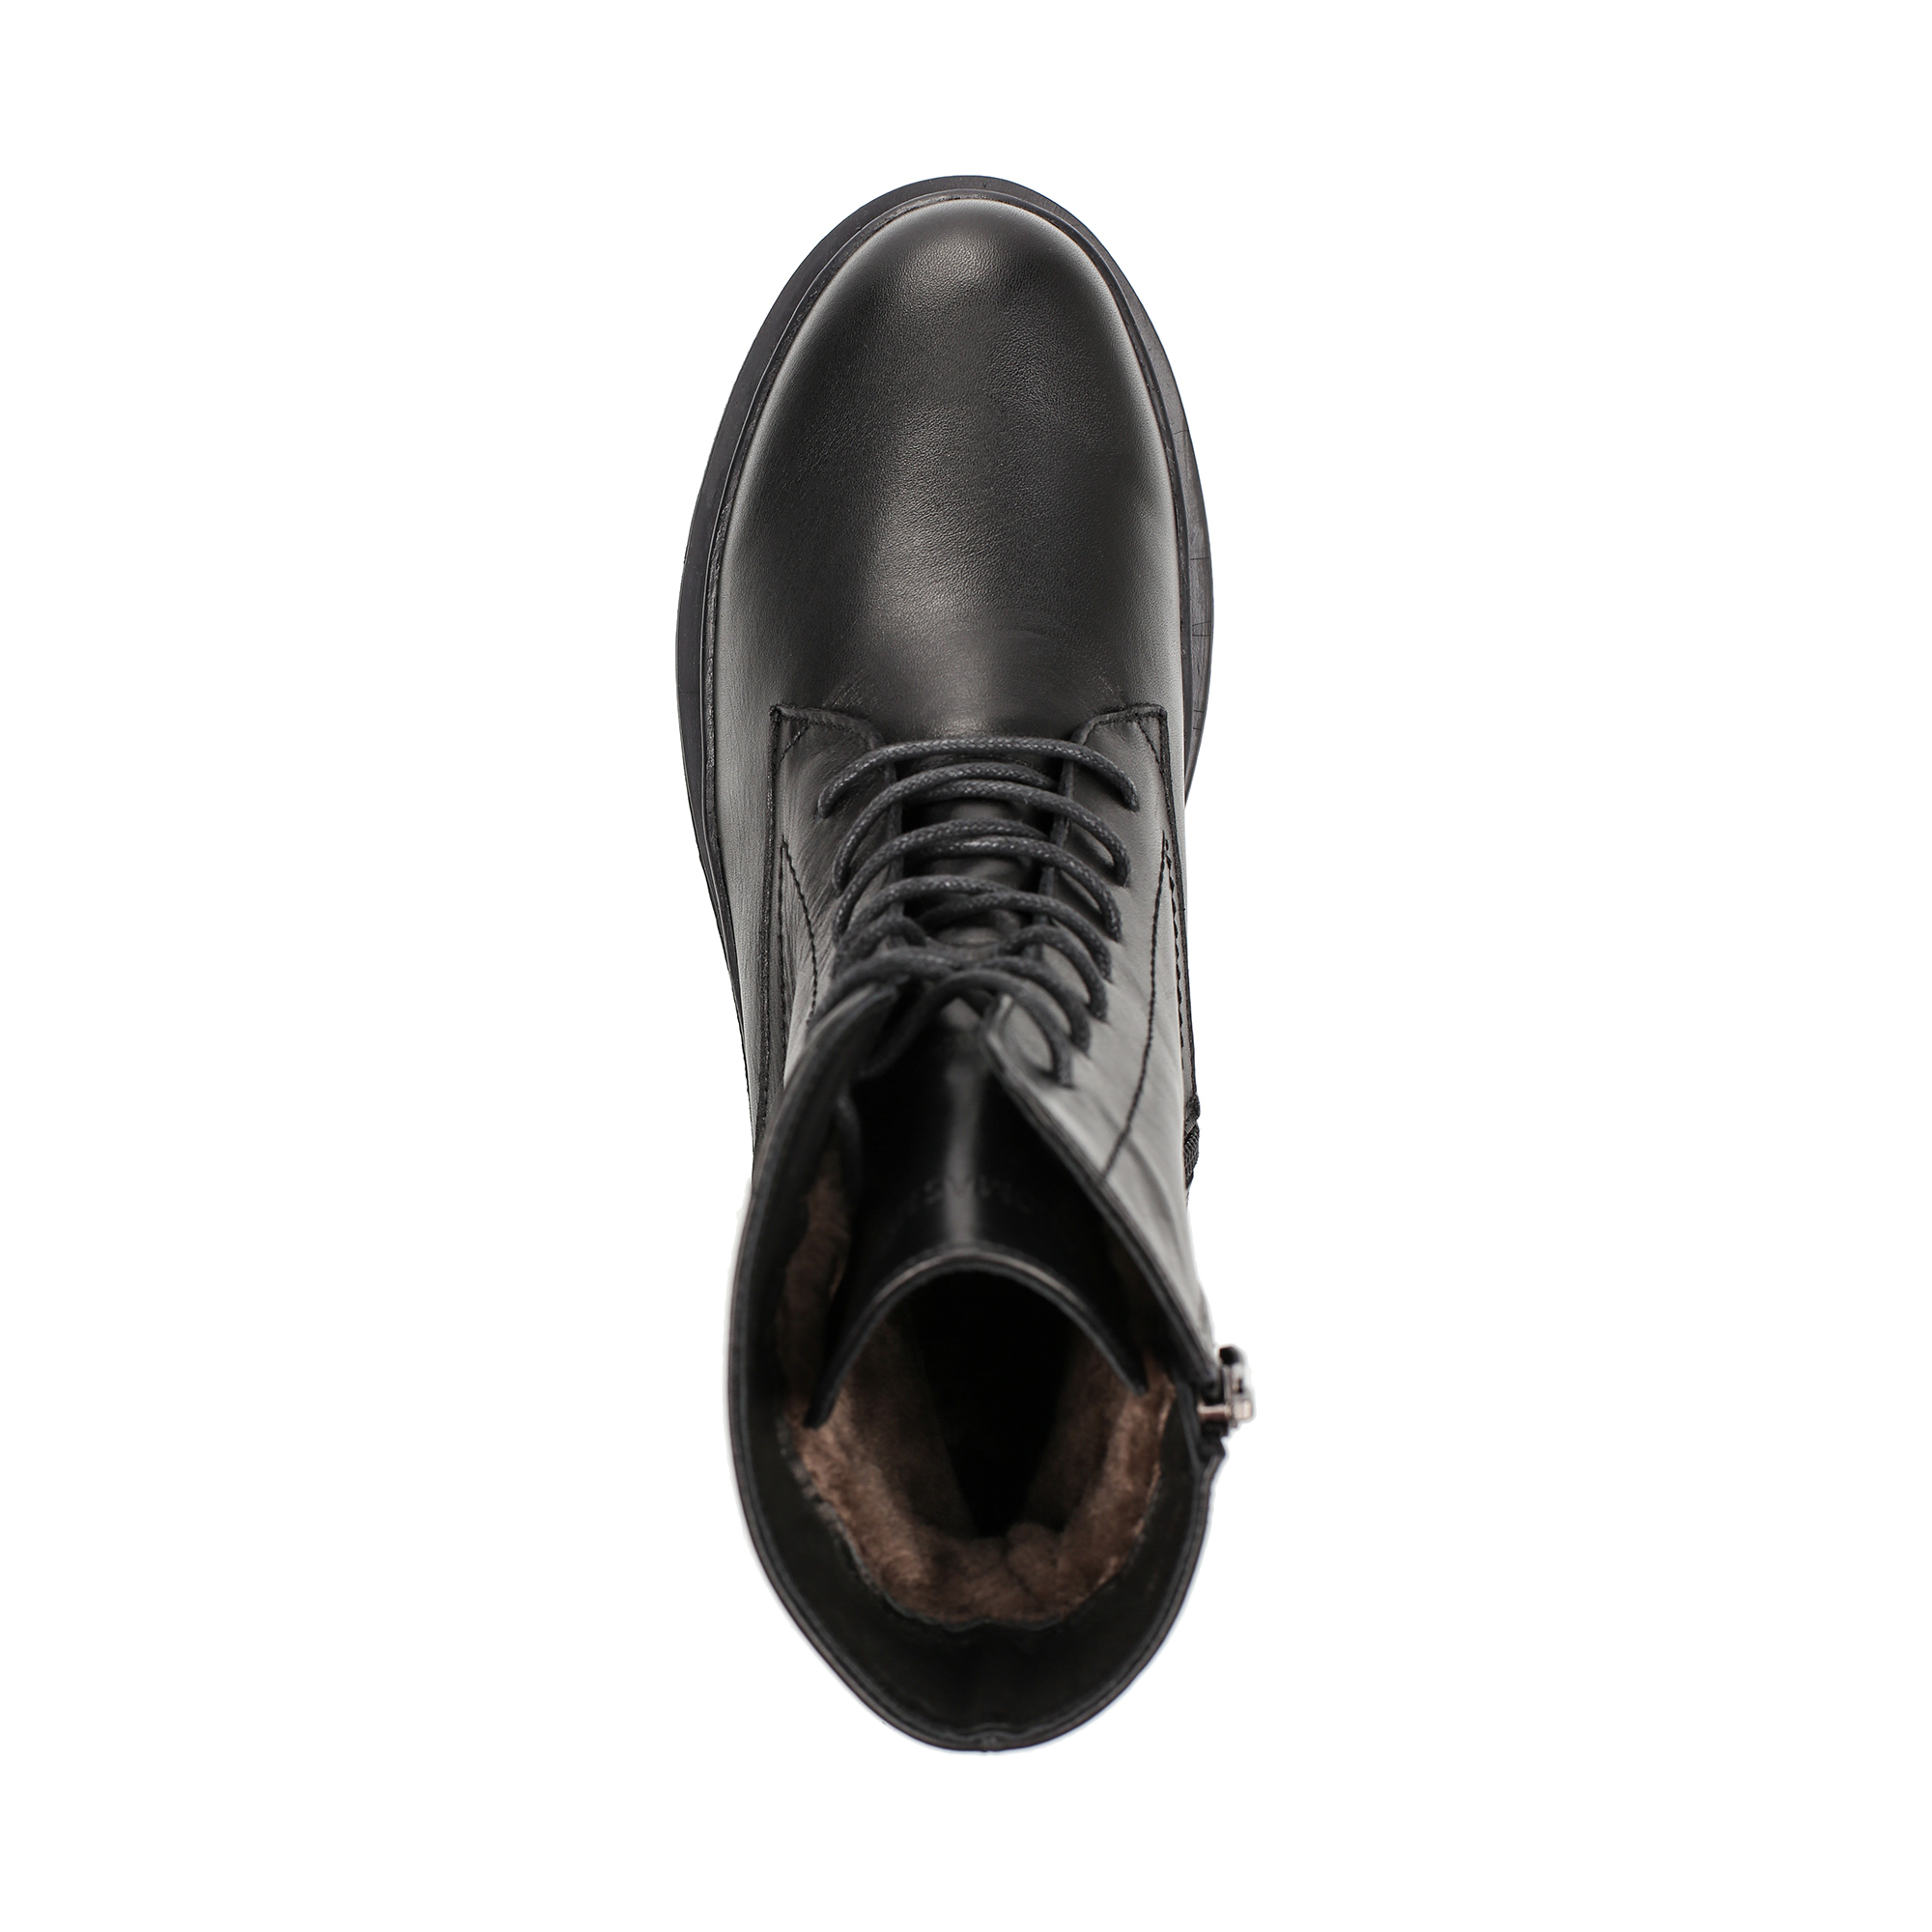 Ботинки Thomas Munz 301 003A 3102, цвет черный, размер 37 - фото 5